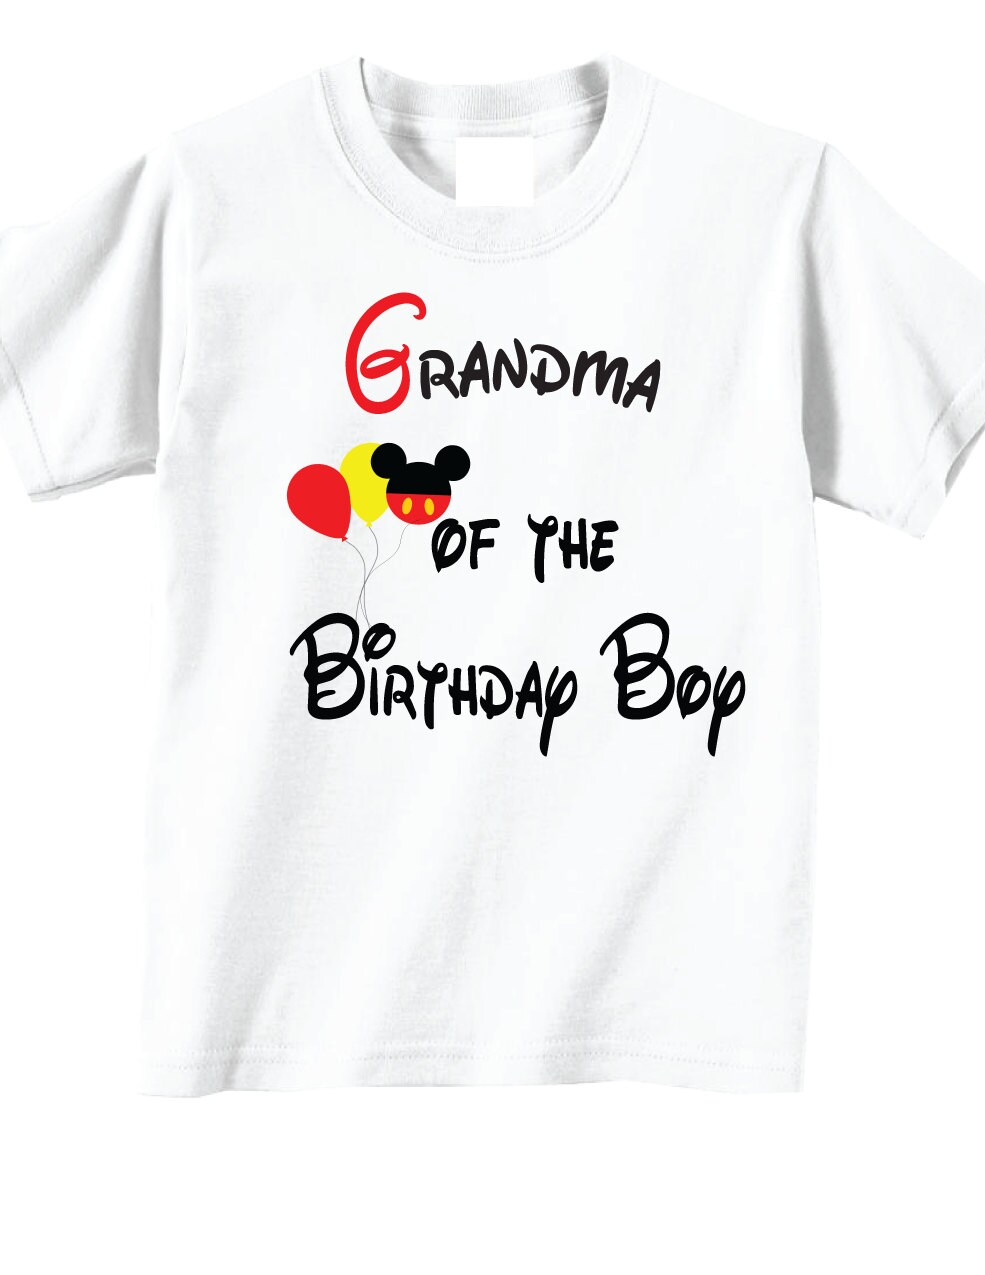 Grandma of the Birthday Boy Birthday Shirts for Grandma | Etsy